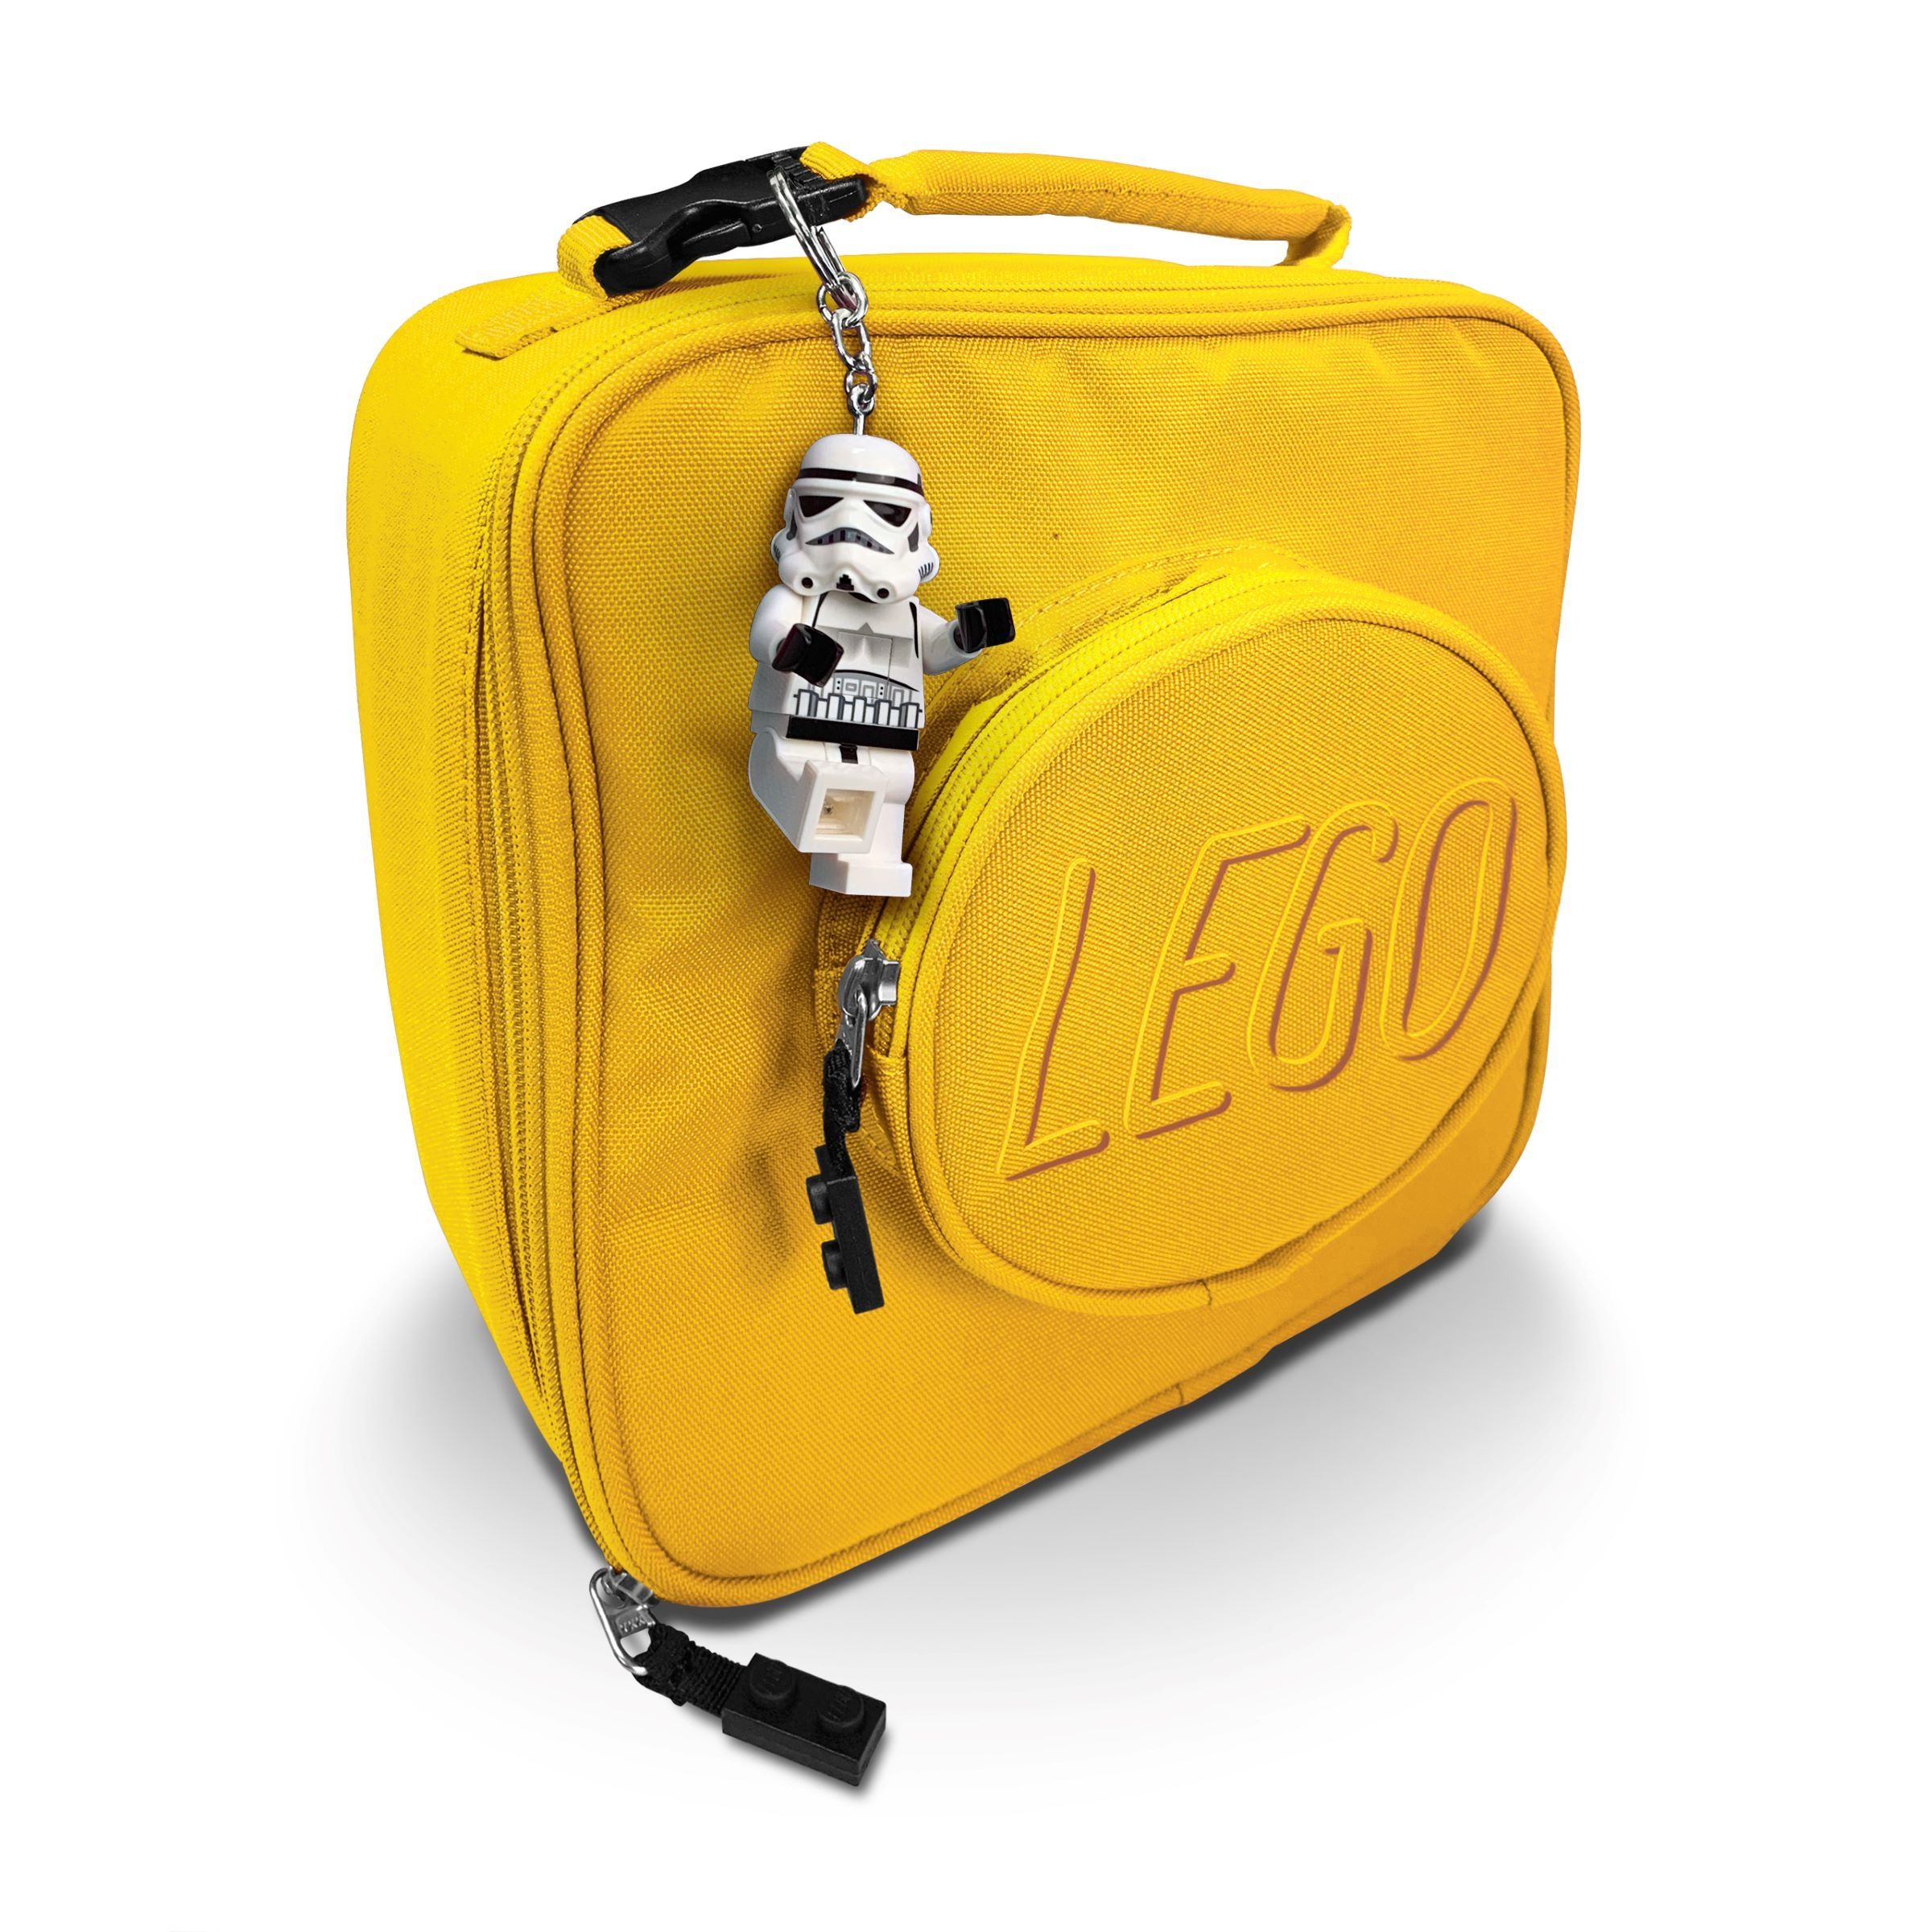 LEGO Gear 5007291 Sturmtruppler-Schlüsselleuchte LEGO_5007291_alt3.jpg